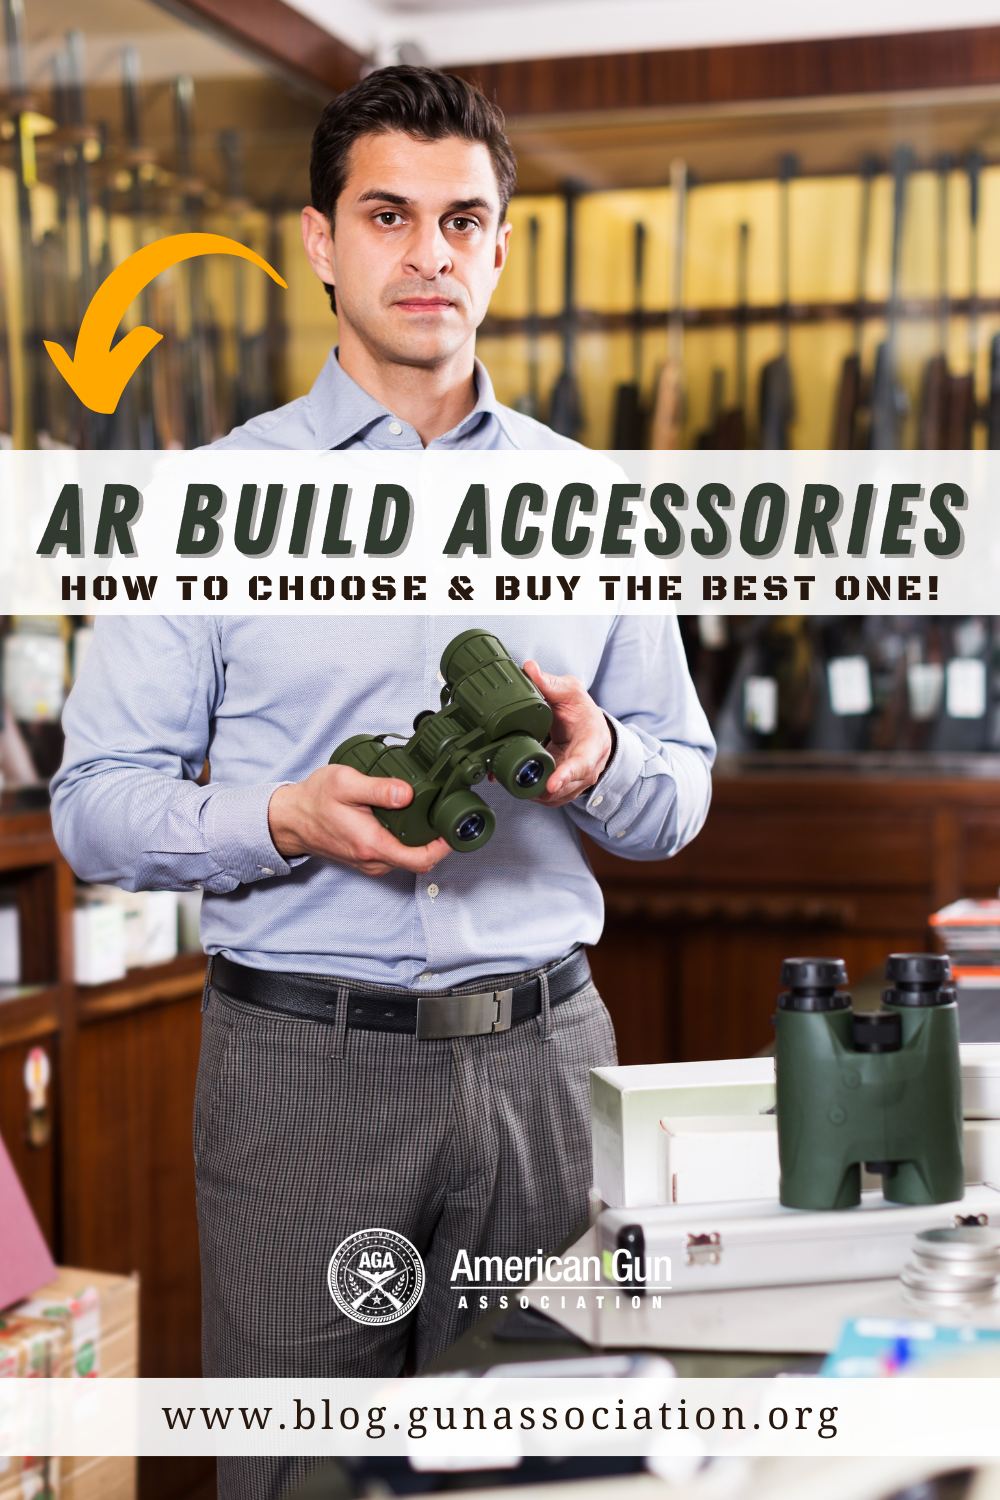 AR build accessories - AGA